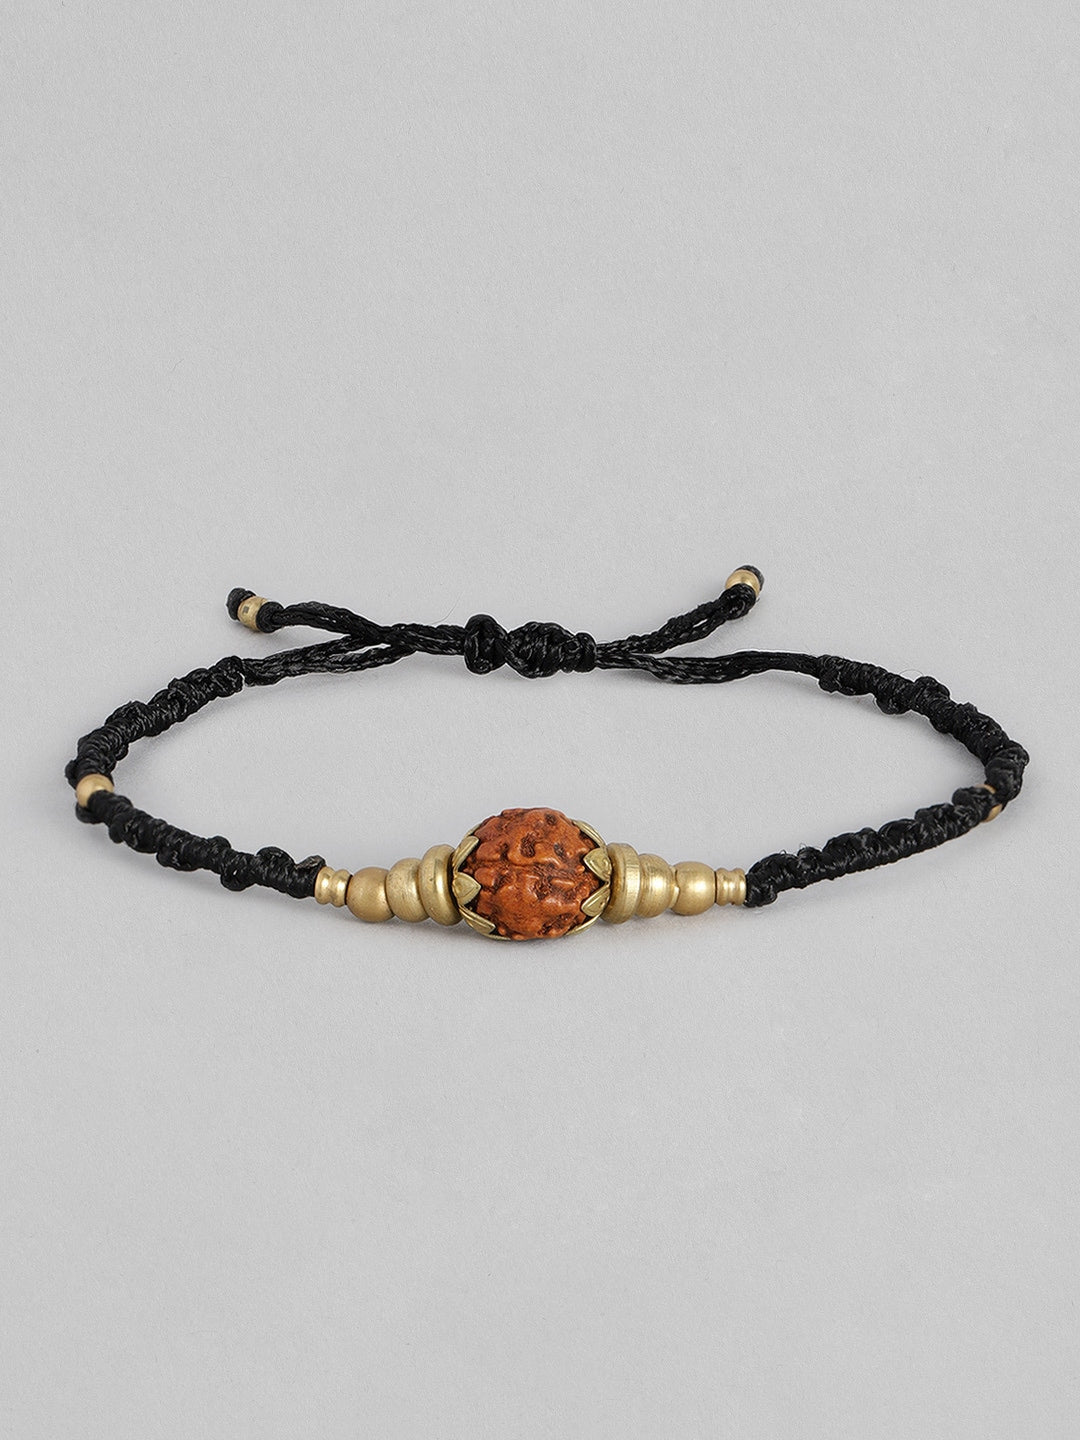 EL REGALO Men Black & Gold-Toned Rudraksha Charm Bracelet - for Men
Style ID: 16310074